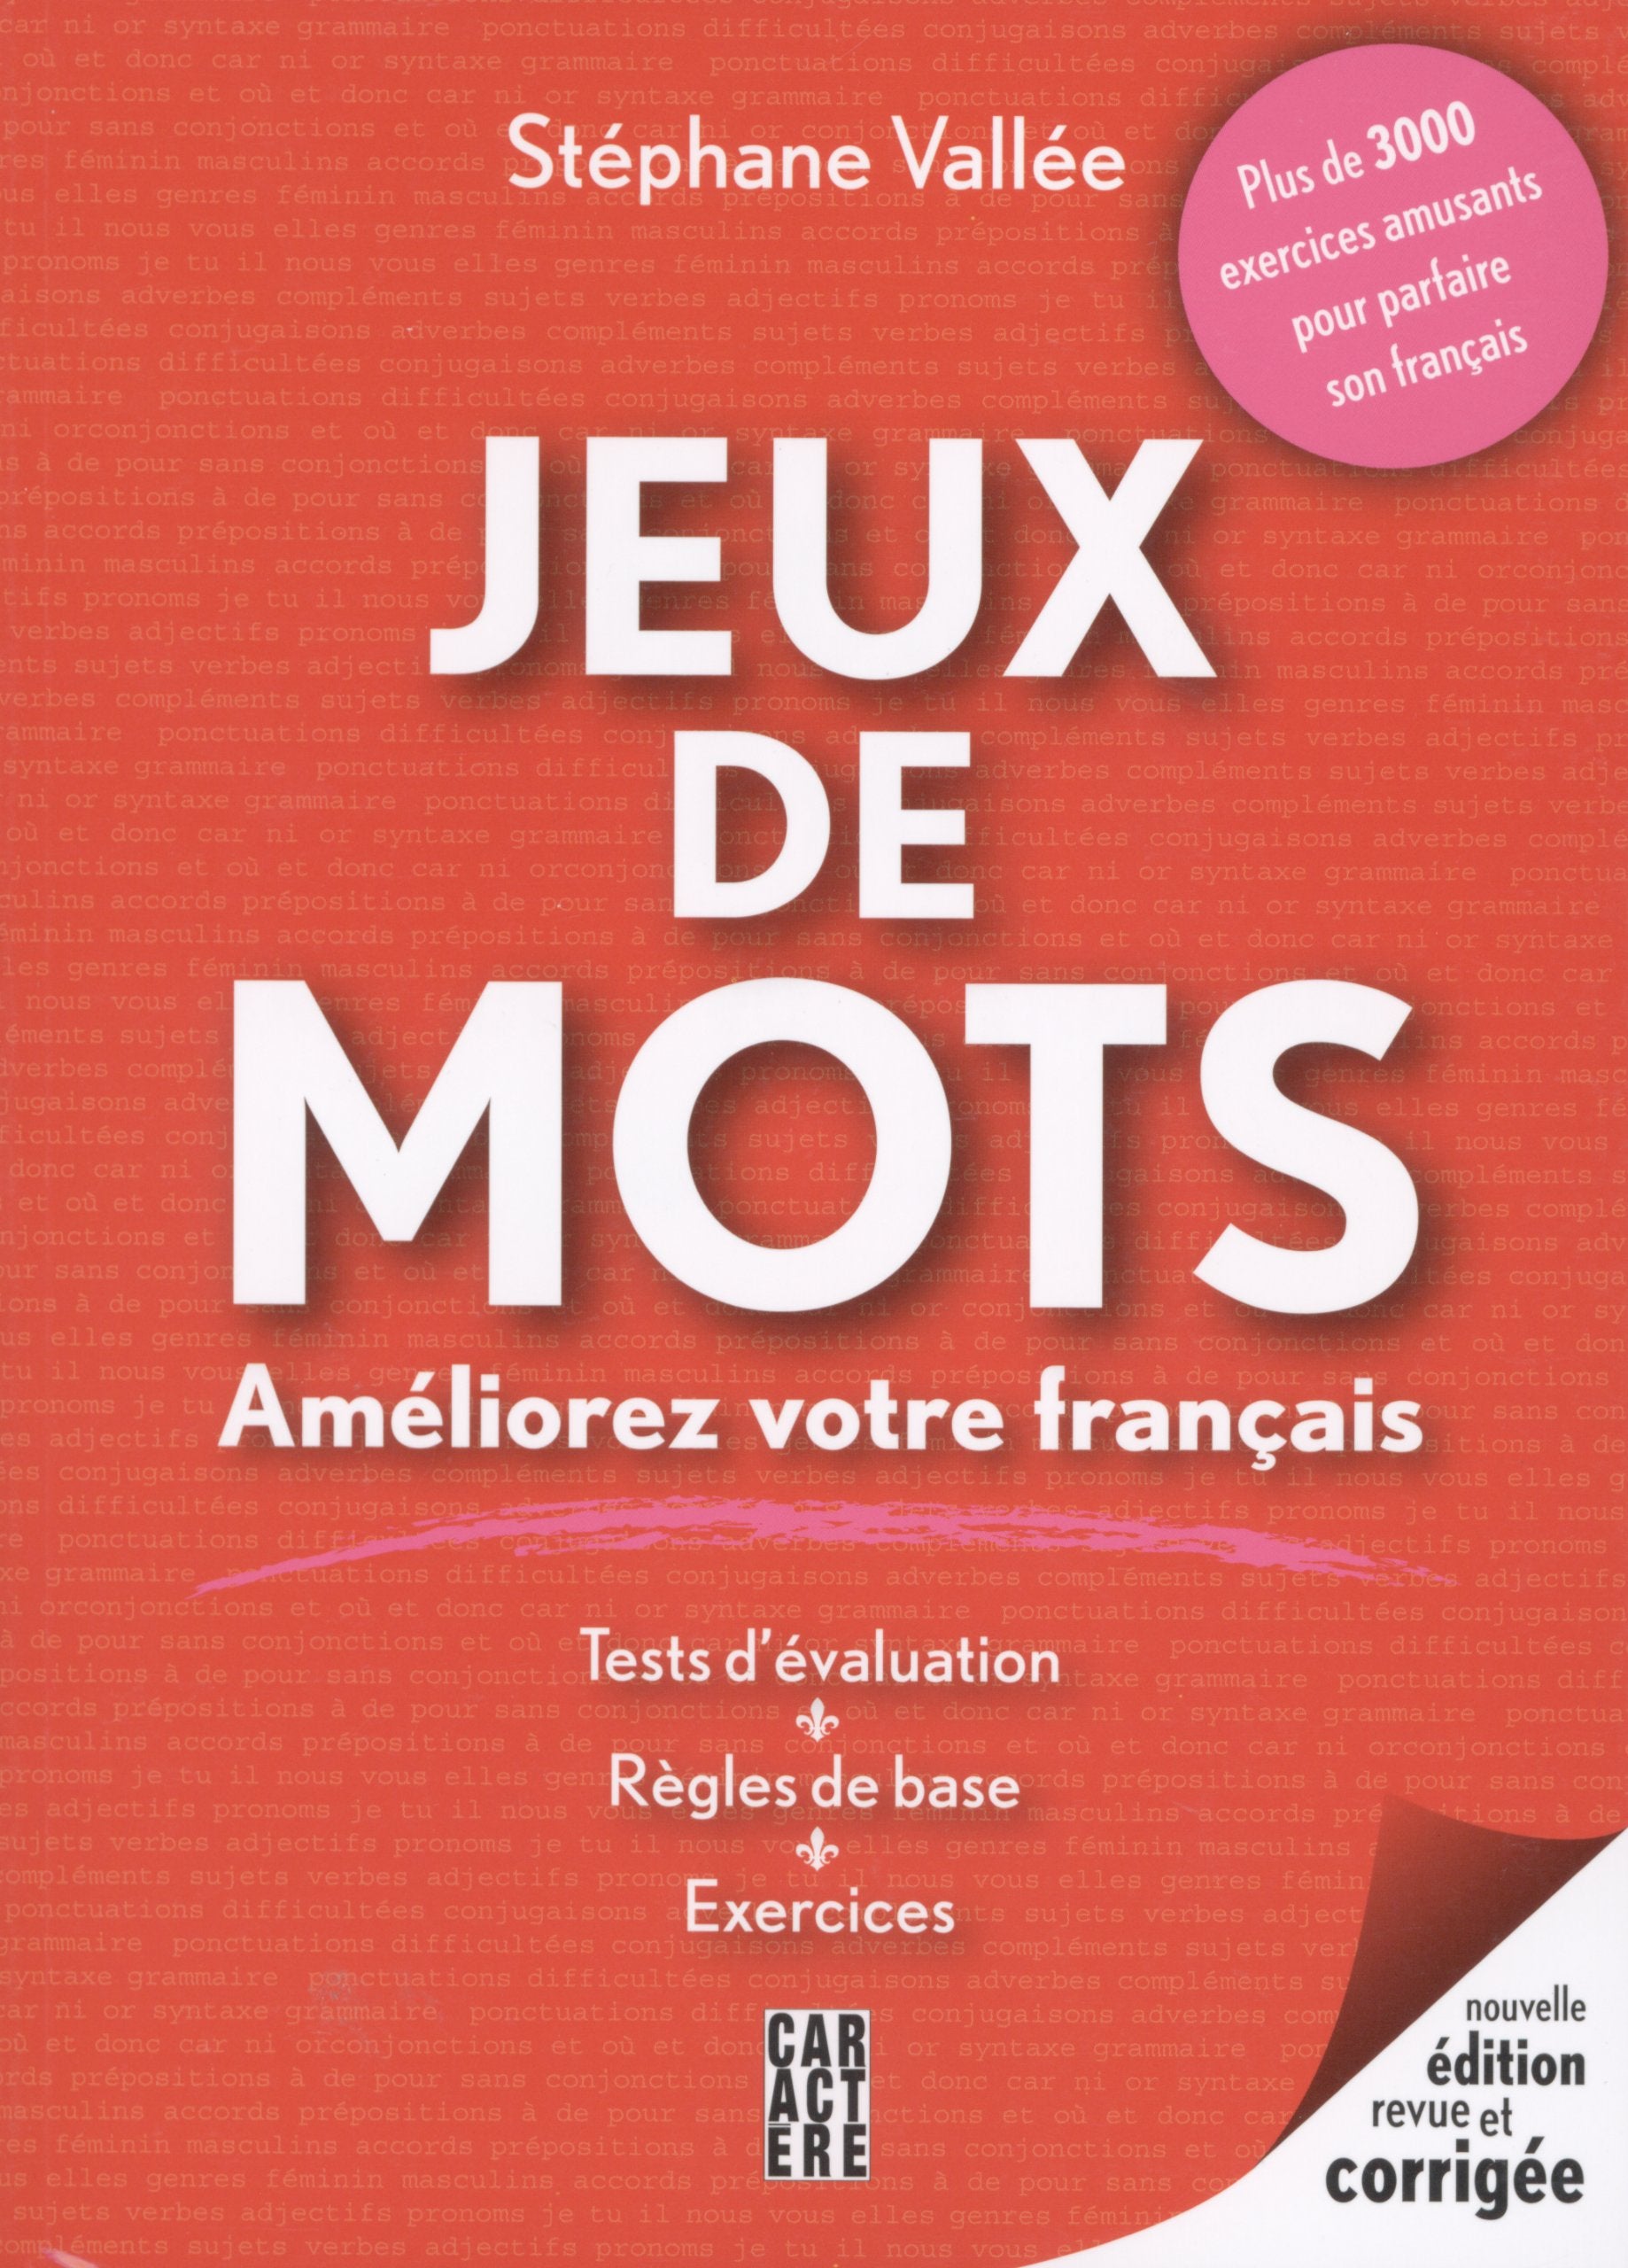 Livre ISBN 2896420649 Jeux de mots : Améliorez votre français (Stéphane Vallée)